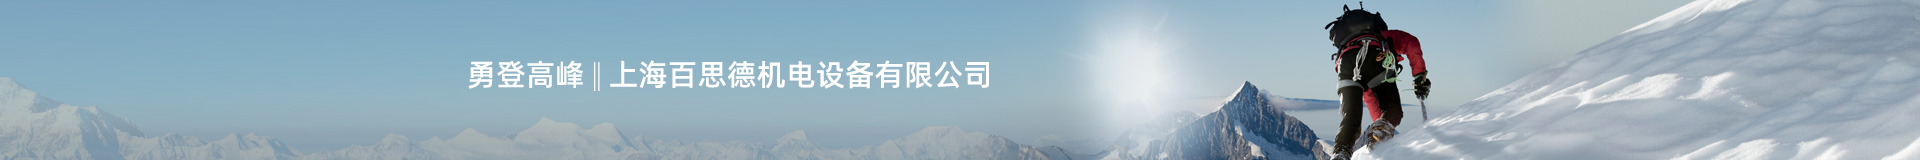 上海百思德机电设备有限公司